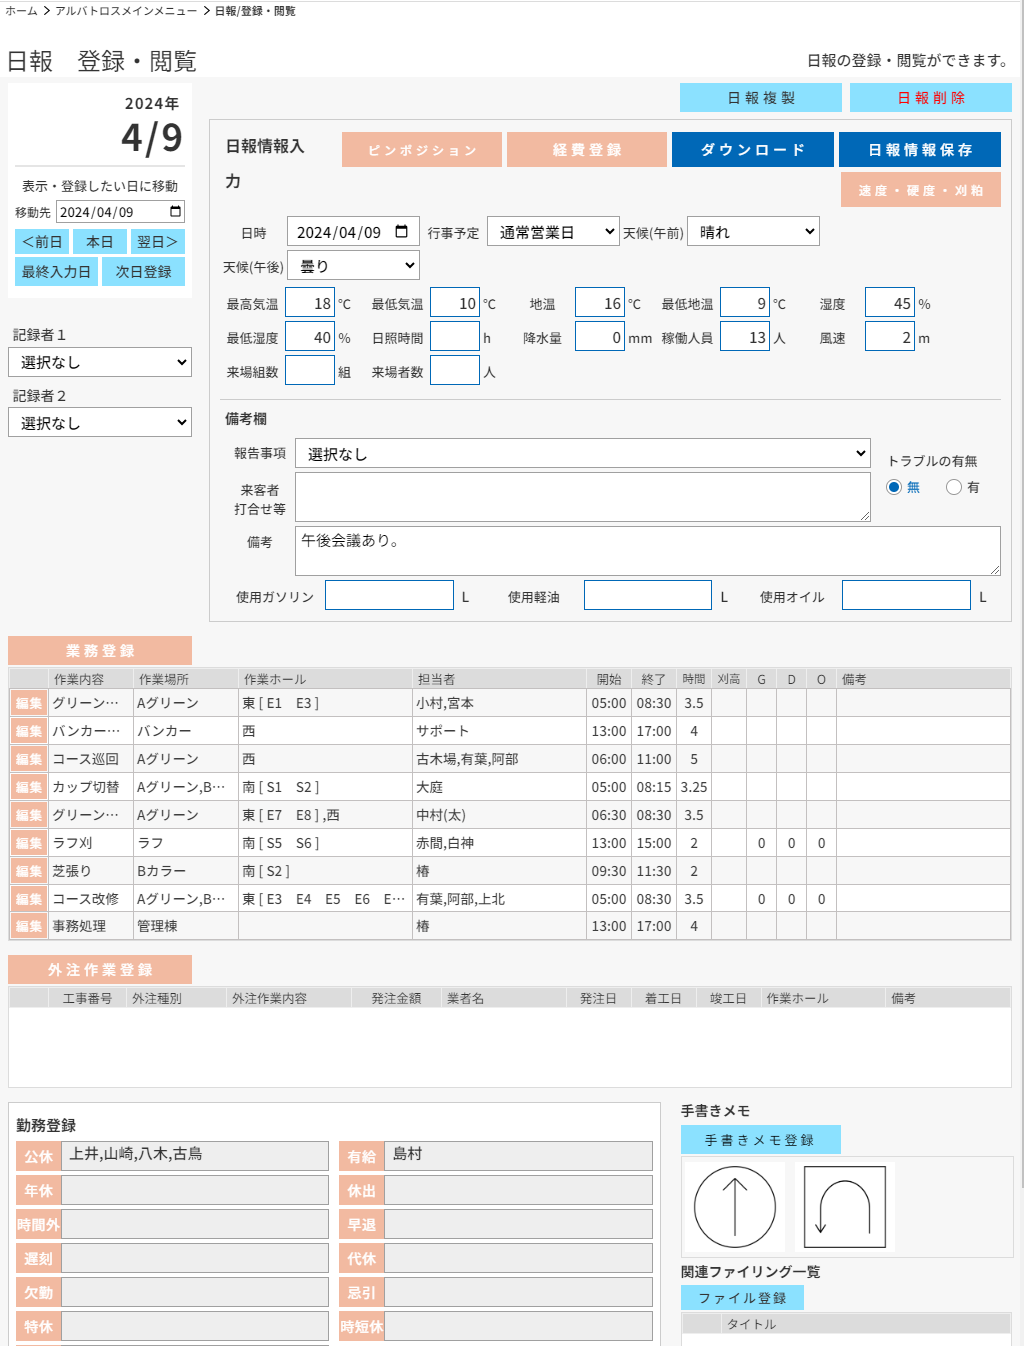 AOC日報画面イメージ